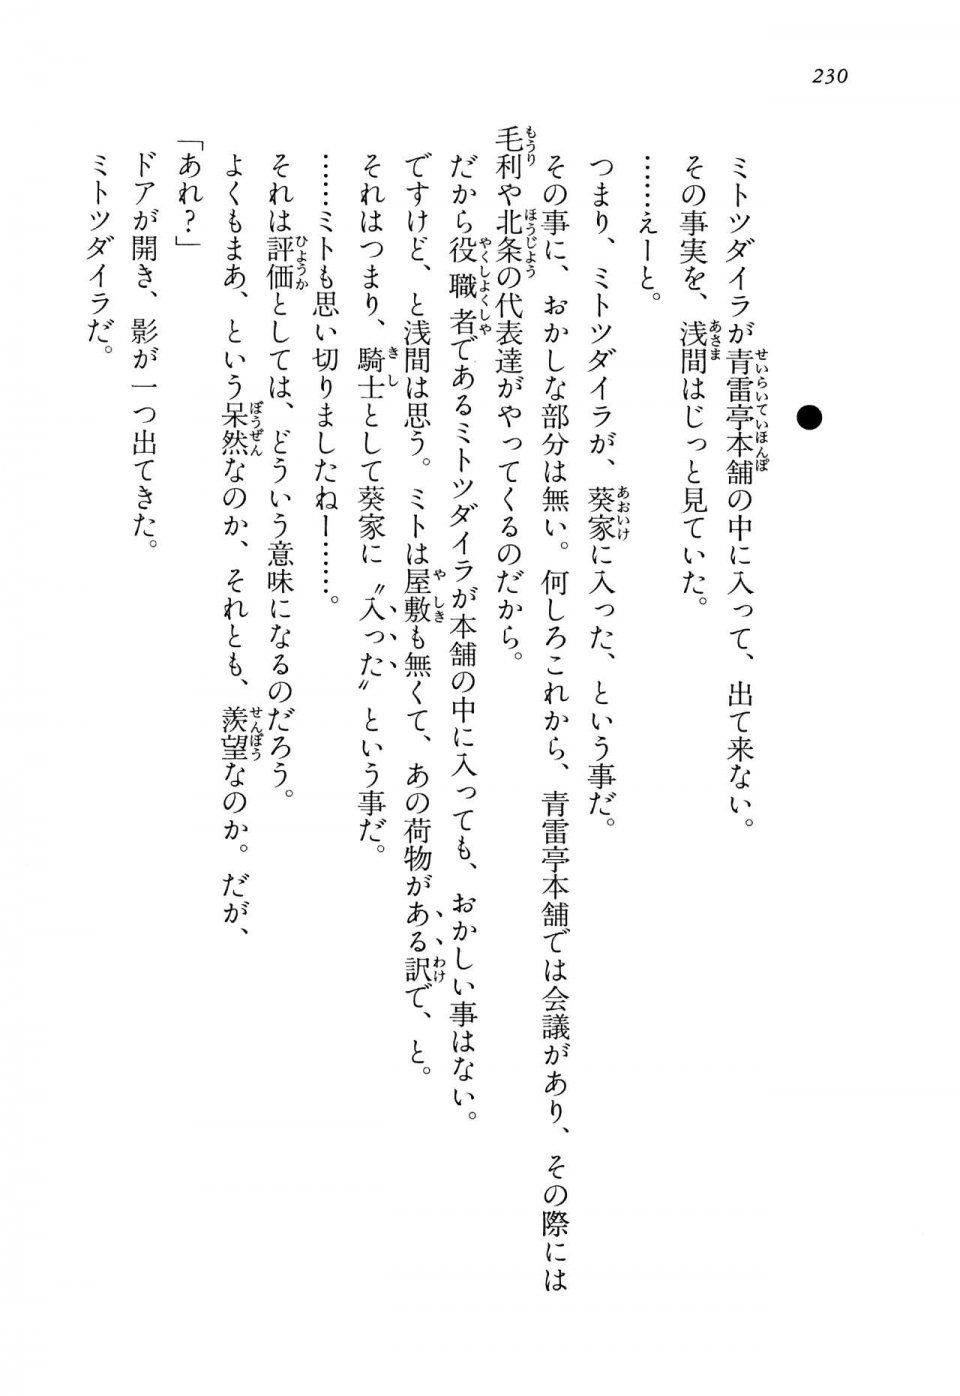 Kyoukai Senjou no Horizon LN Vol 14(6B) - Photo #230